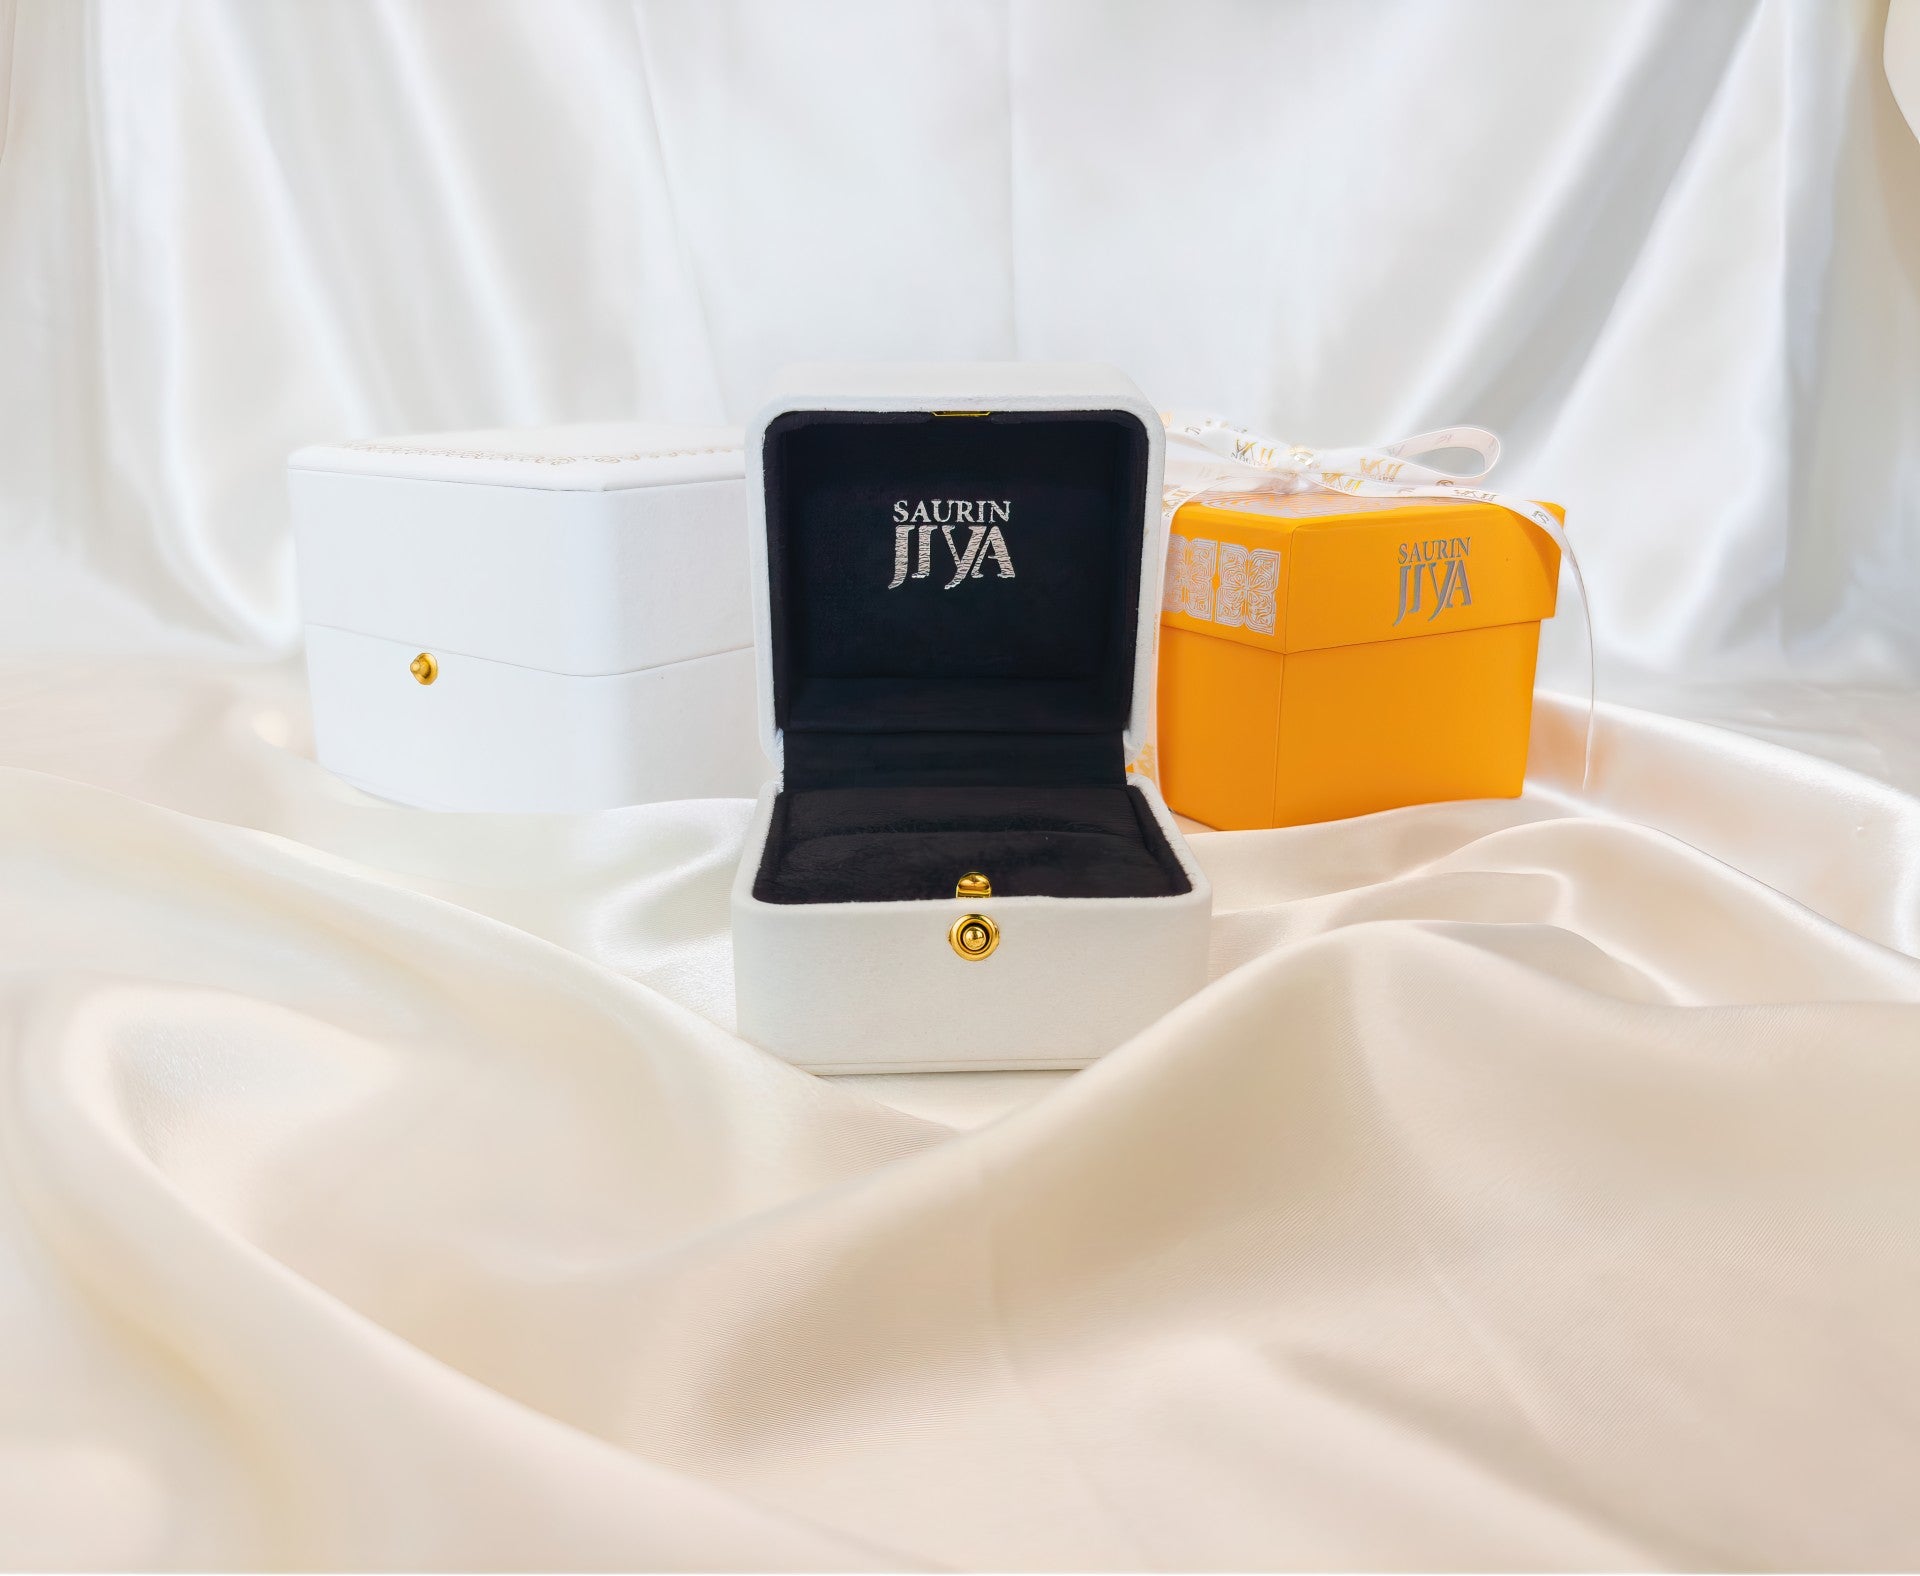 saurin jiya jewelry box